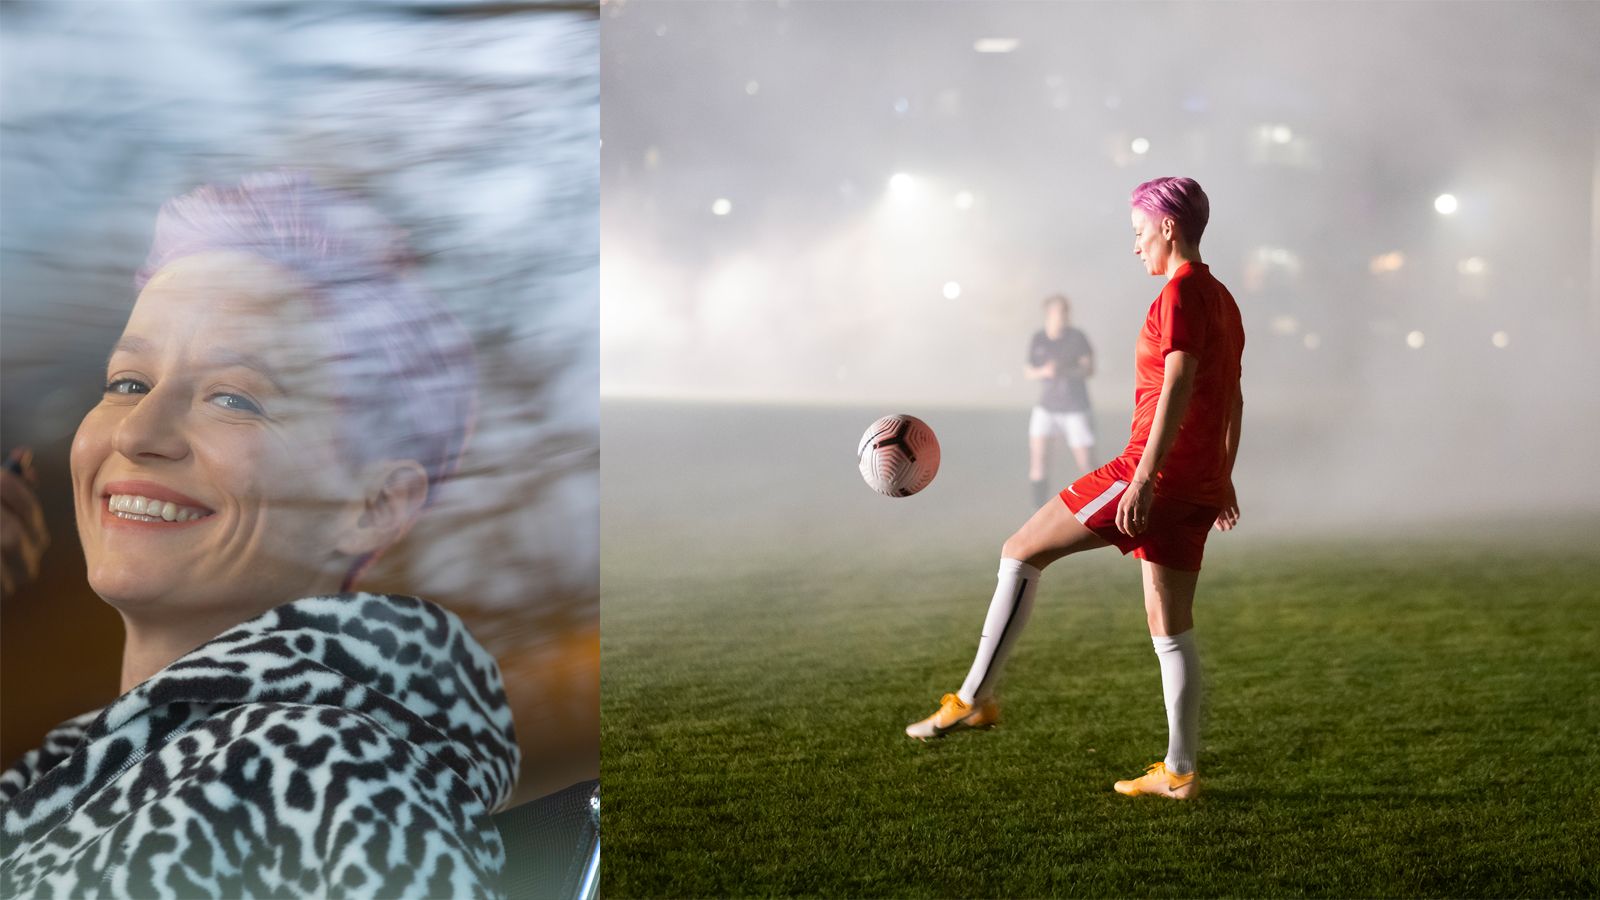 Shiseido 新アンバサダーでプロサッカー選手のミーガン ラピノー に接近 ビューティ Elle エル デジタル